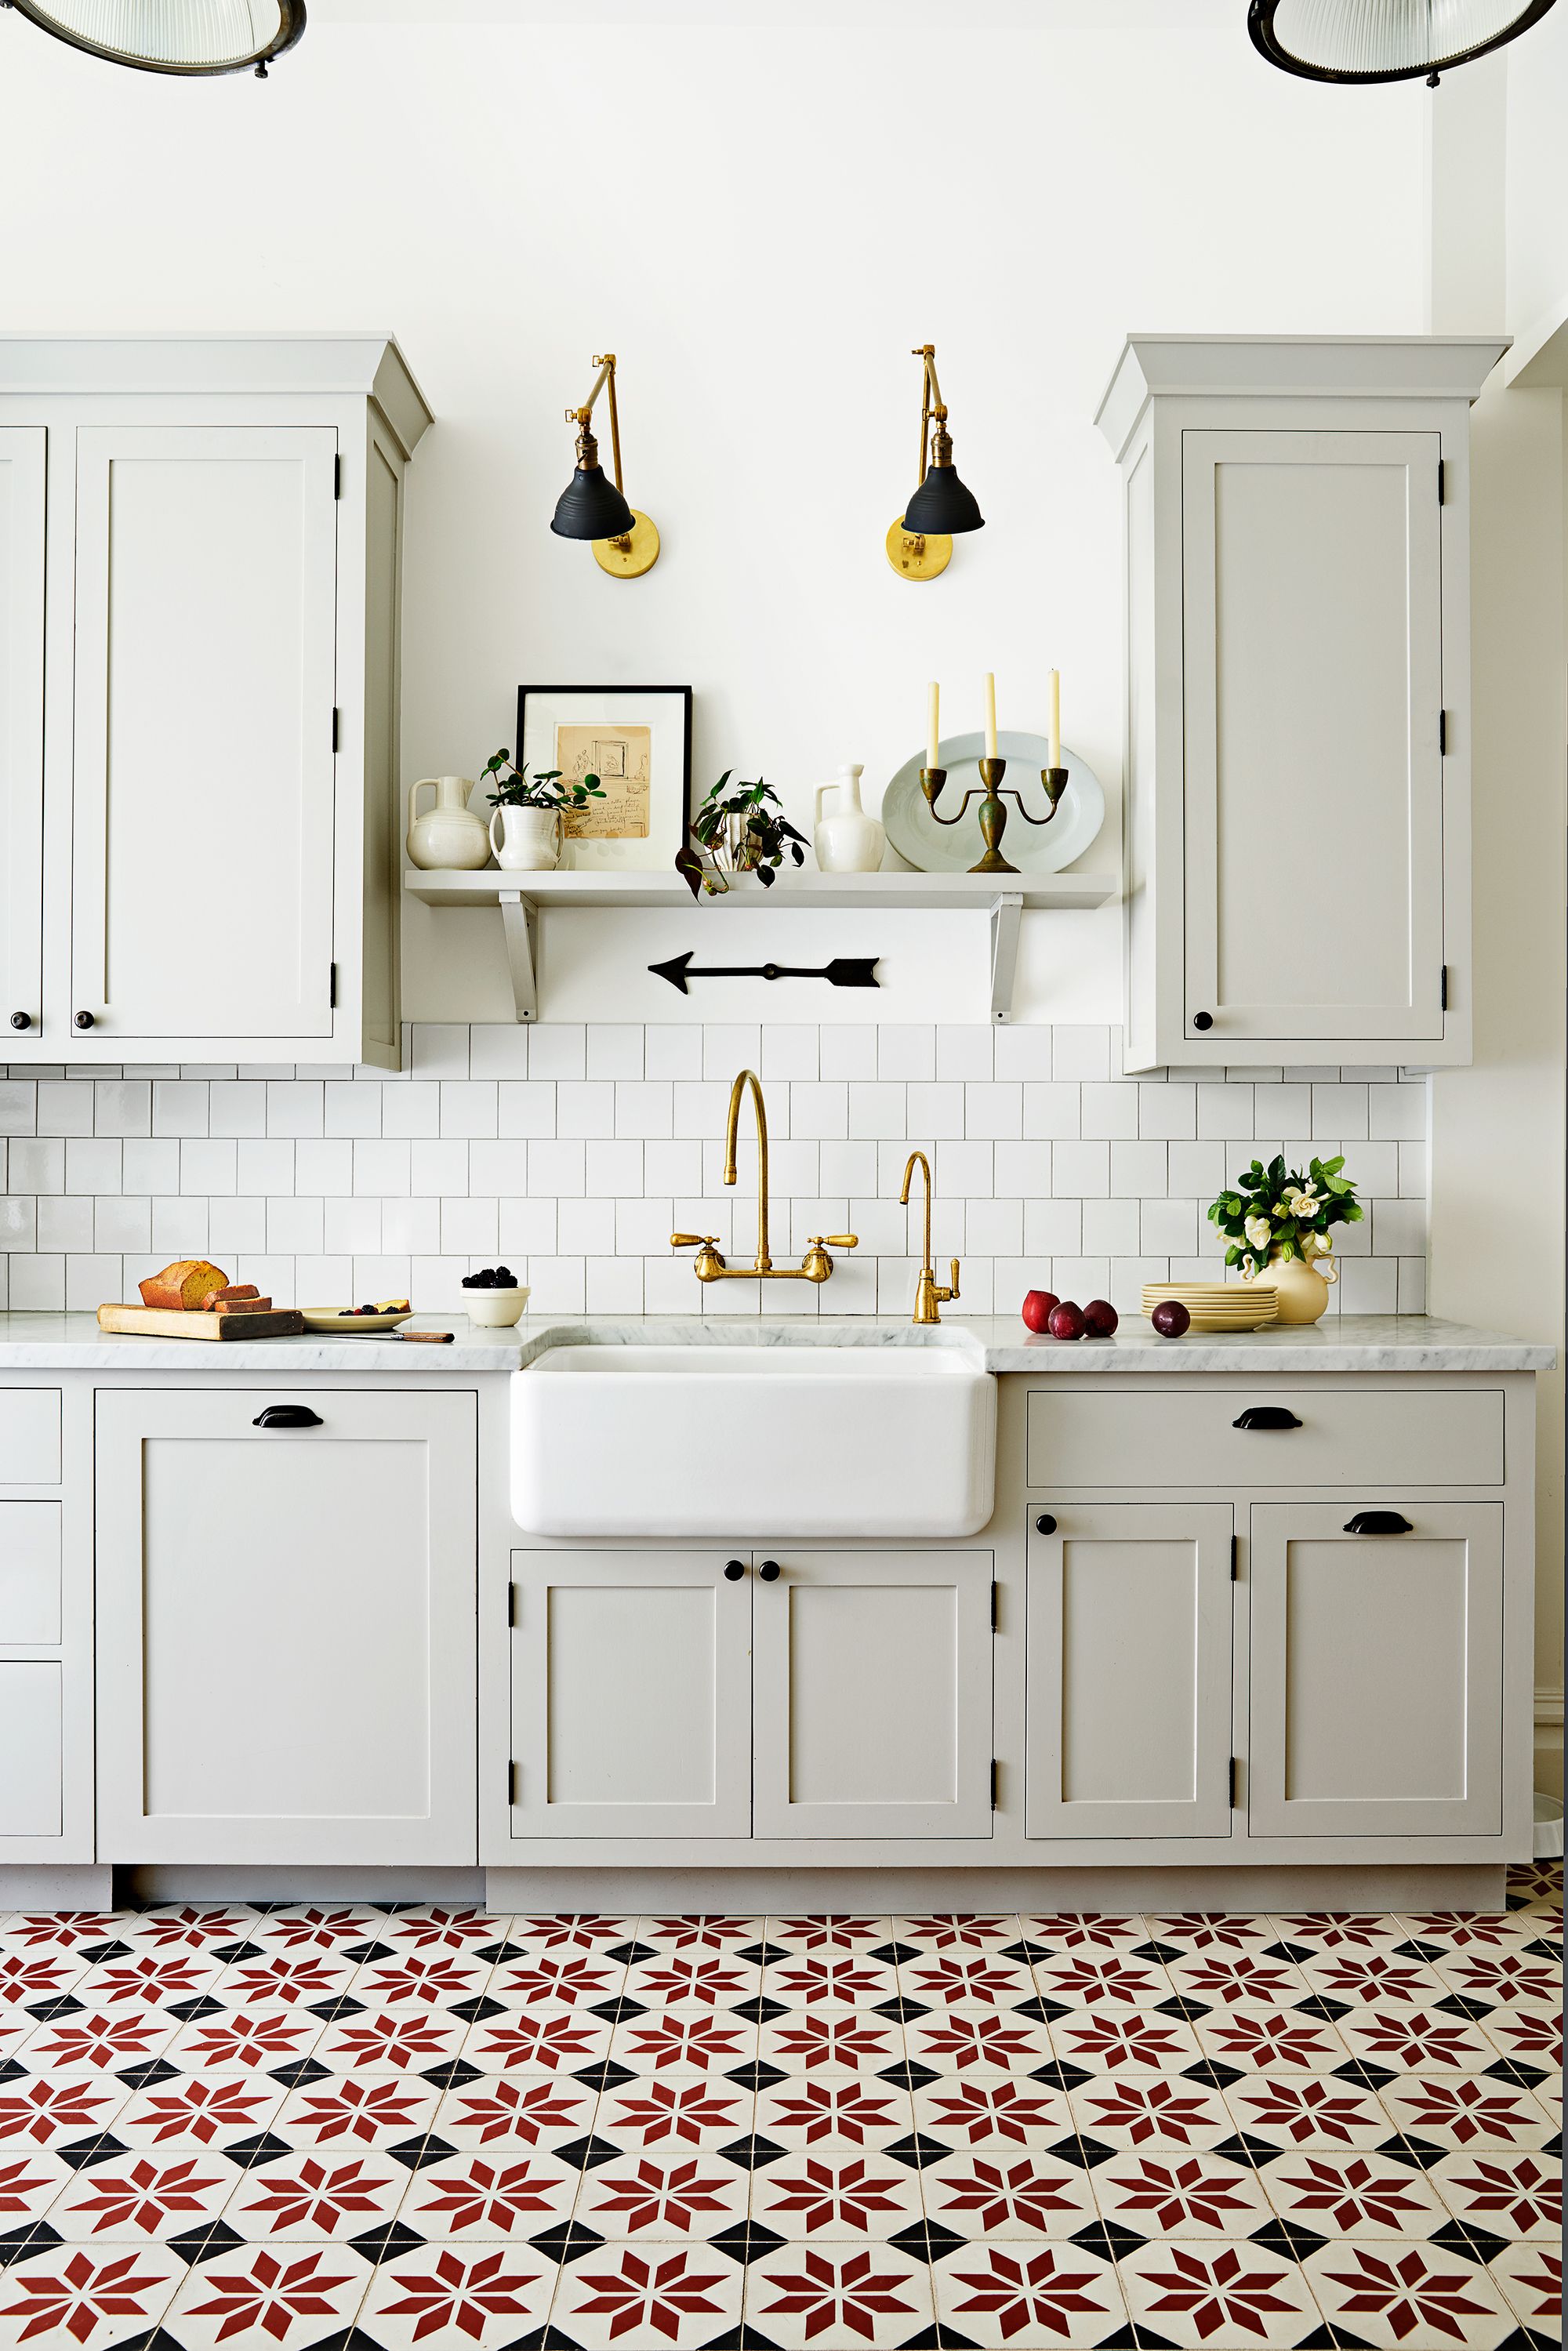 18 Modern Floor Tile Designs The Best, Blue And White Kitchen Floor Tiles